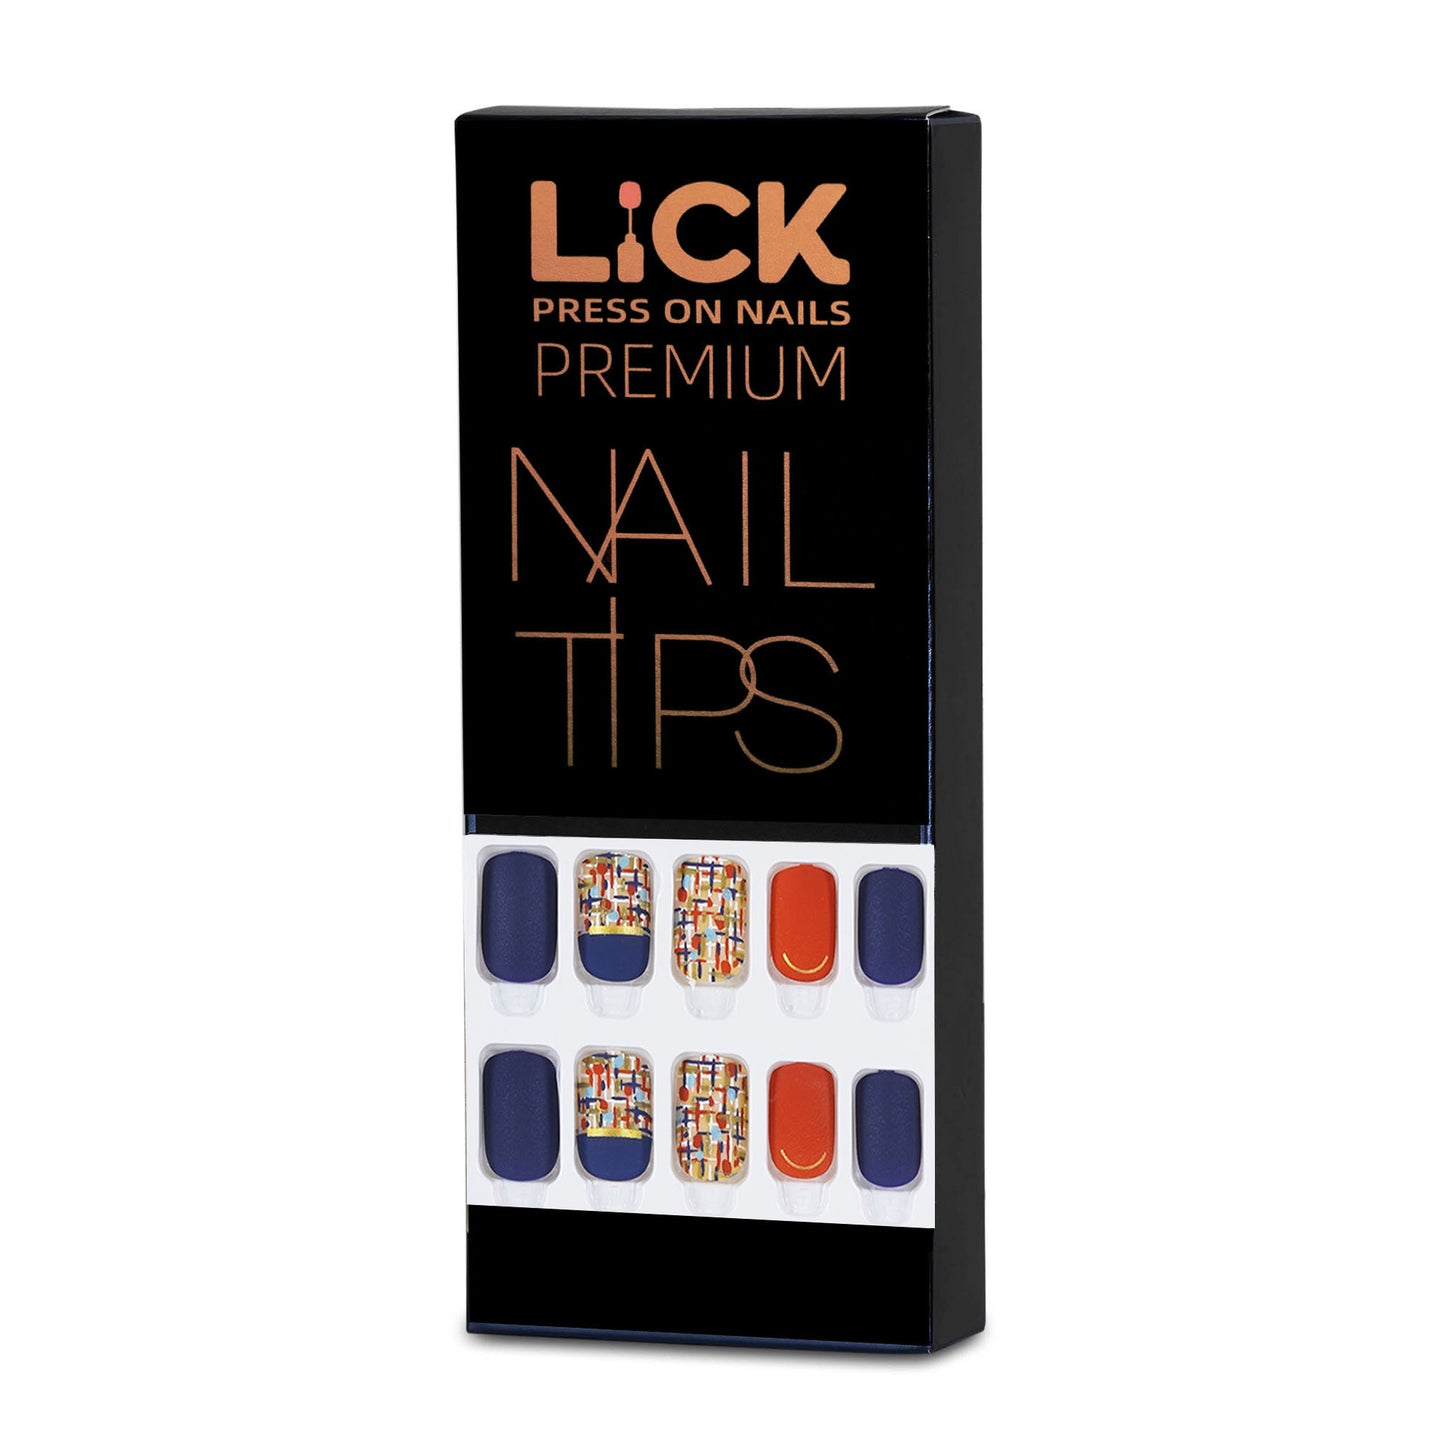 LICK NAILS Lavender Shade Square Press On Nails